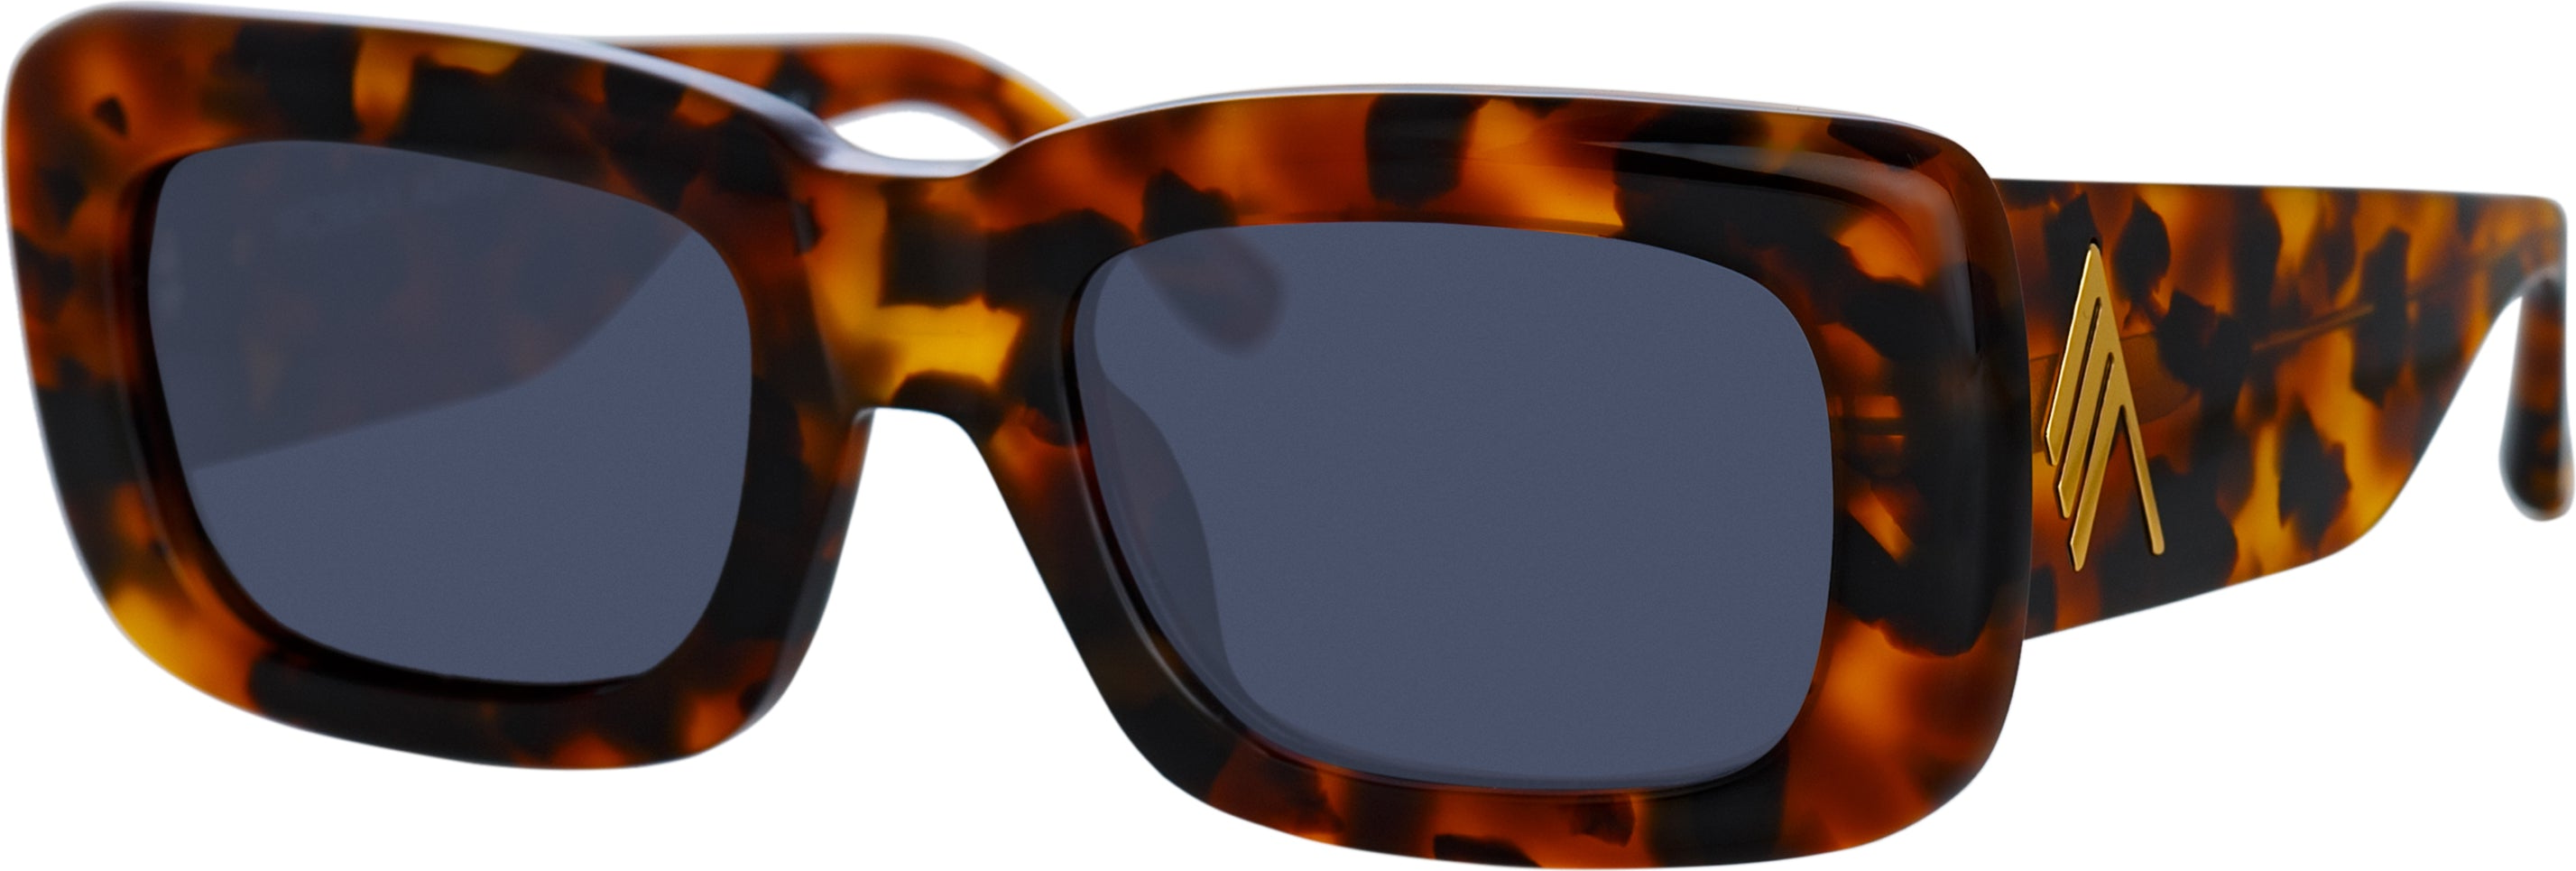 Color_ATTICO3C24SUN - The Attico Marfa Rectangular Sunglasses in Tortoiseshell and Blue Lenses